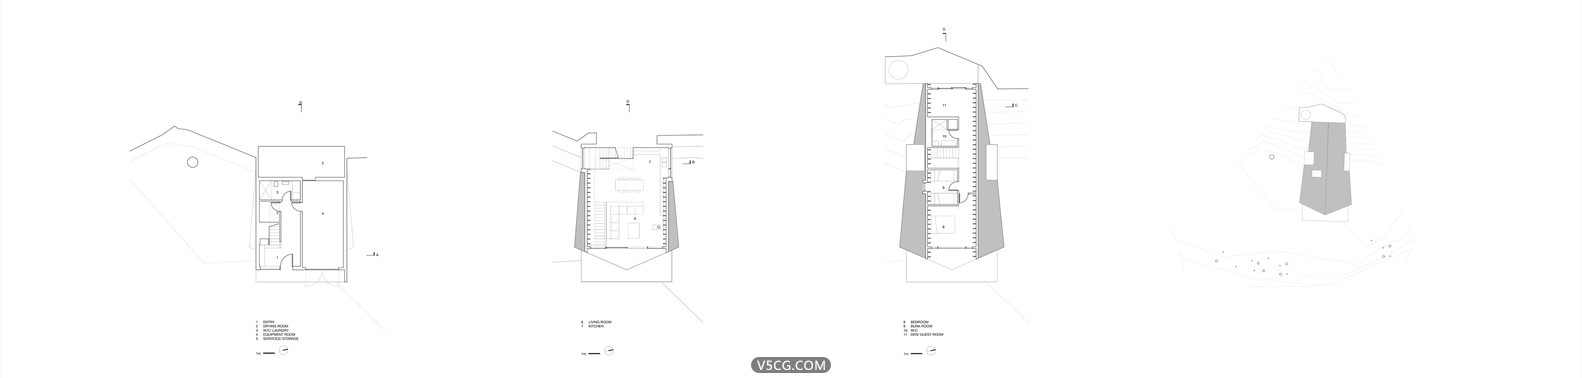 Scott-and-Scott-Architects--Whistler-Cabin-Plans.jpg